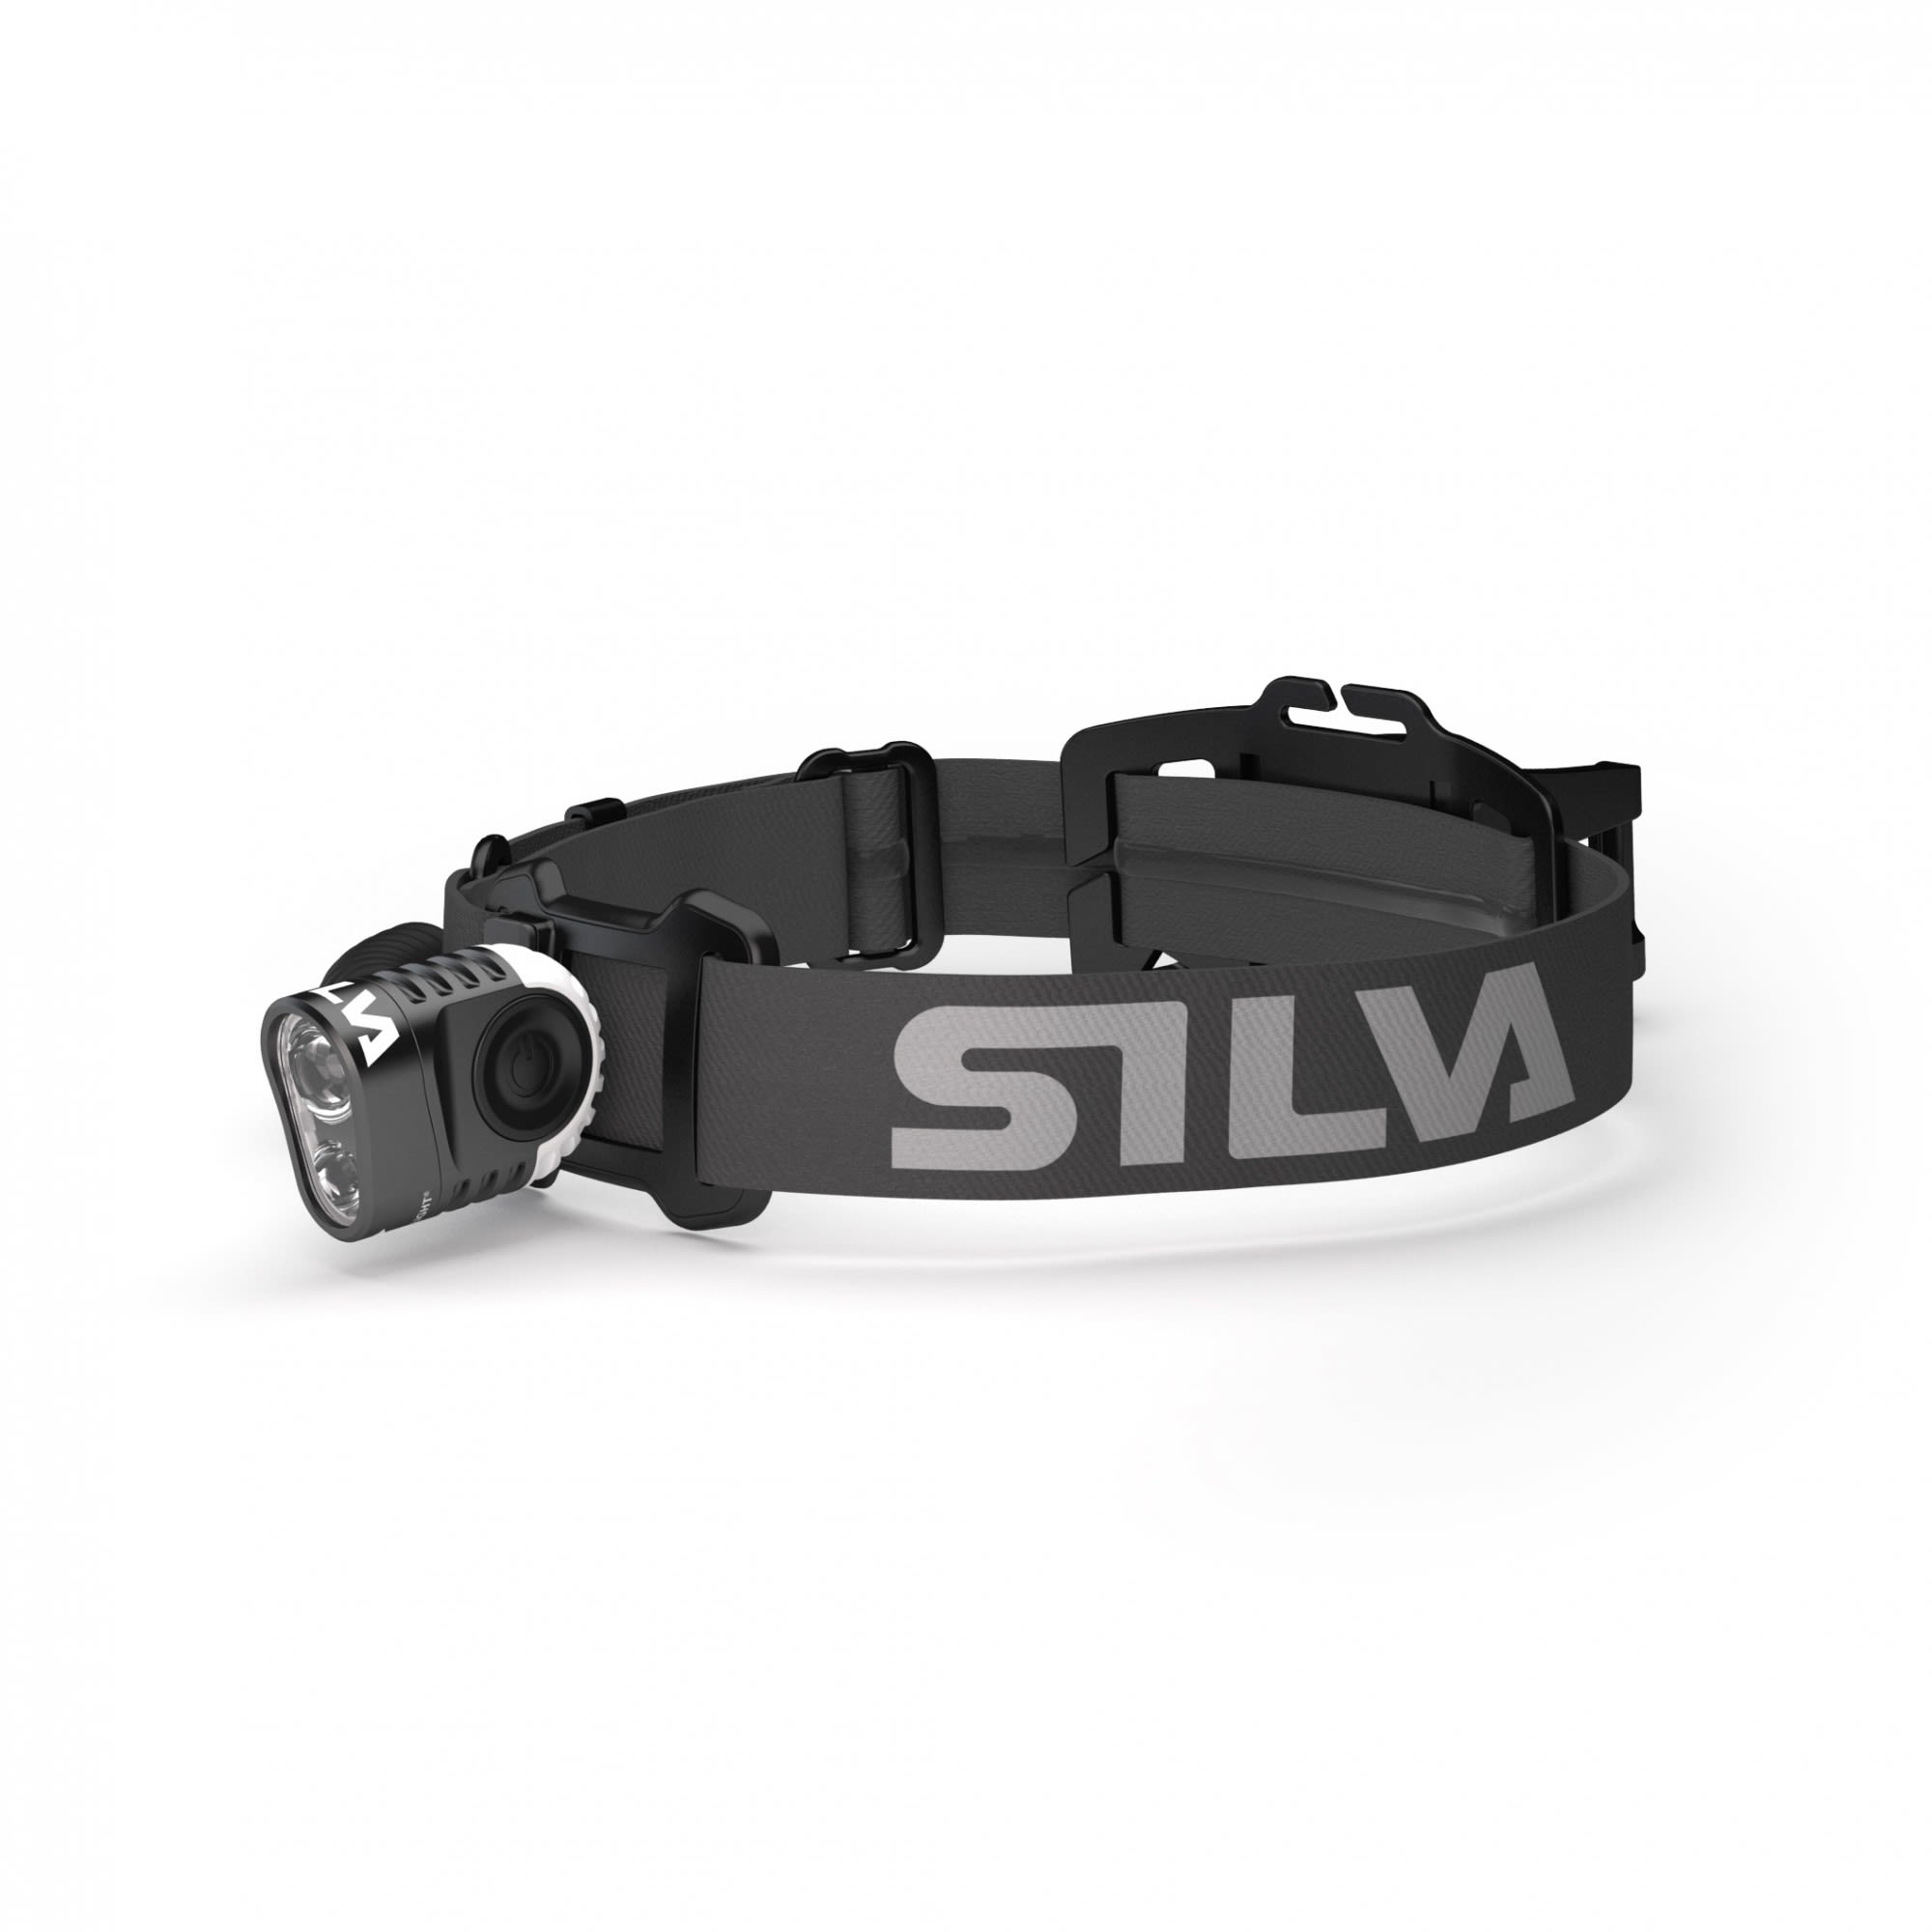 Silva Trail Speed 5XT Schwarz- Stirnlampen- Grsse One Size - Farbe Black unter Silva